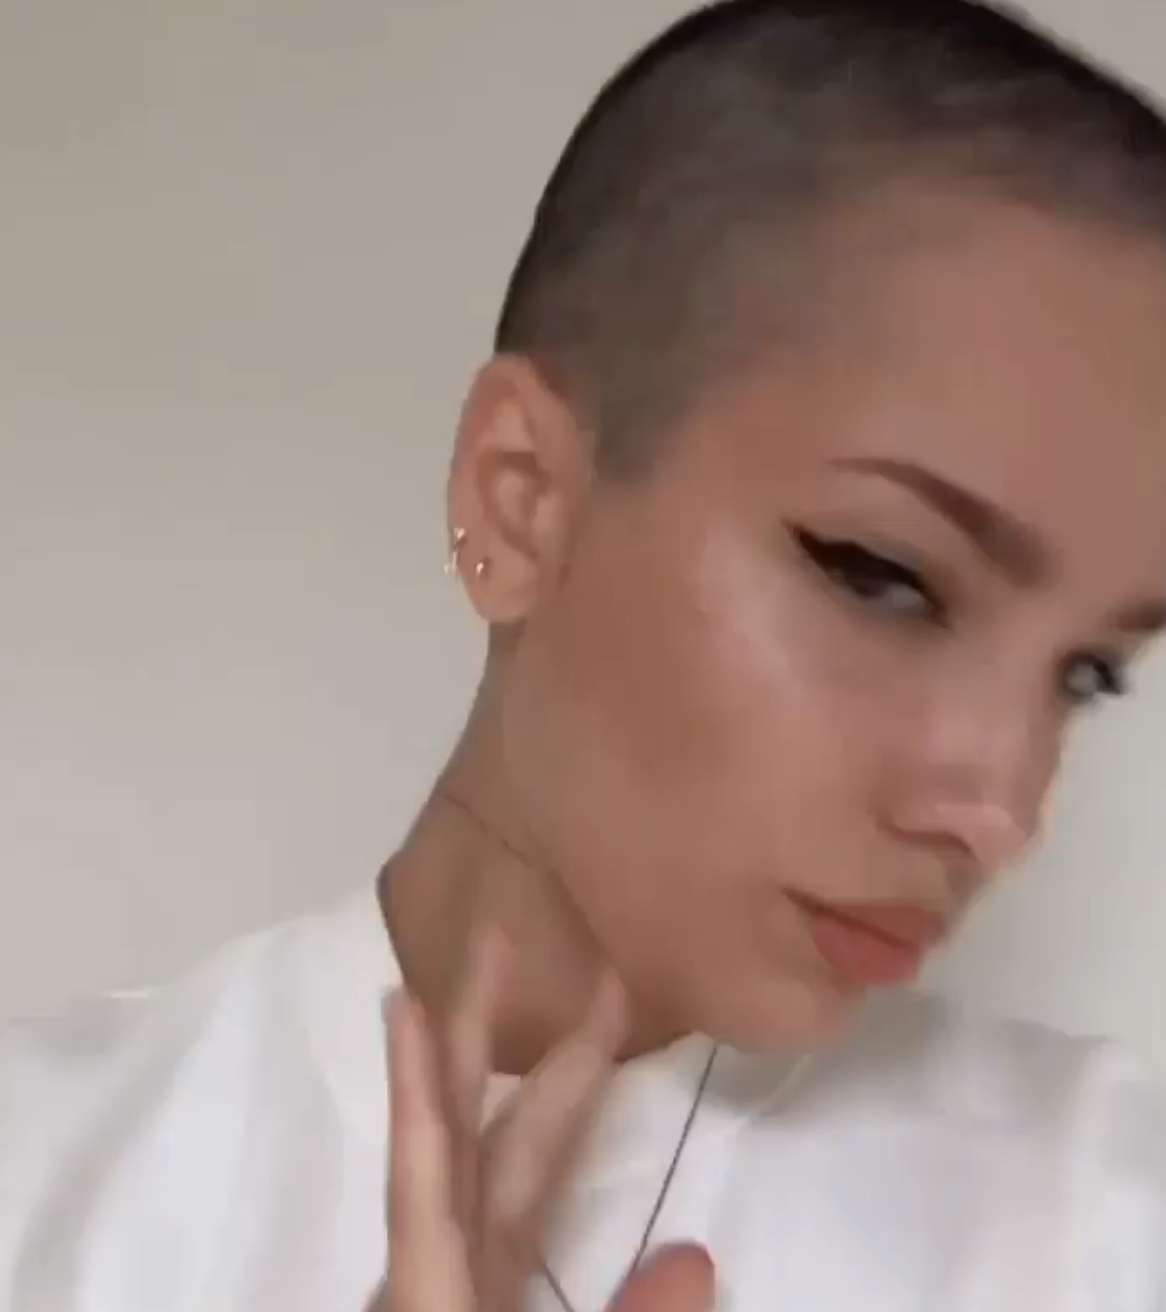 selfie of her shaved head